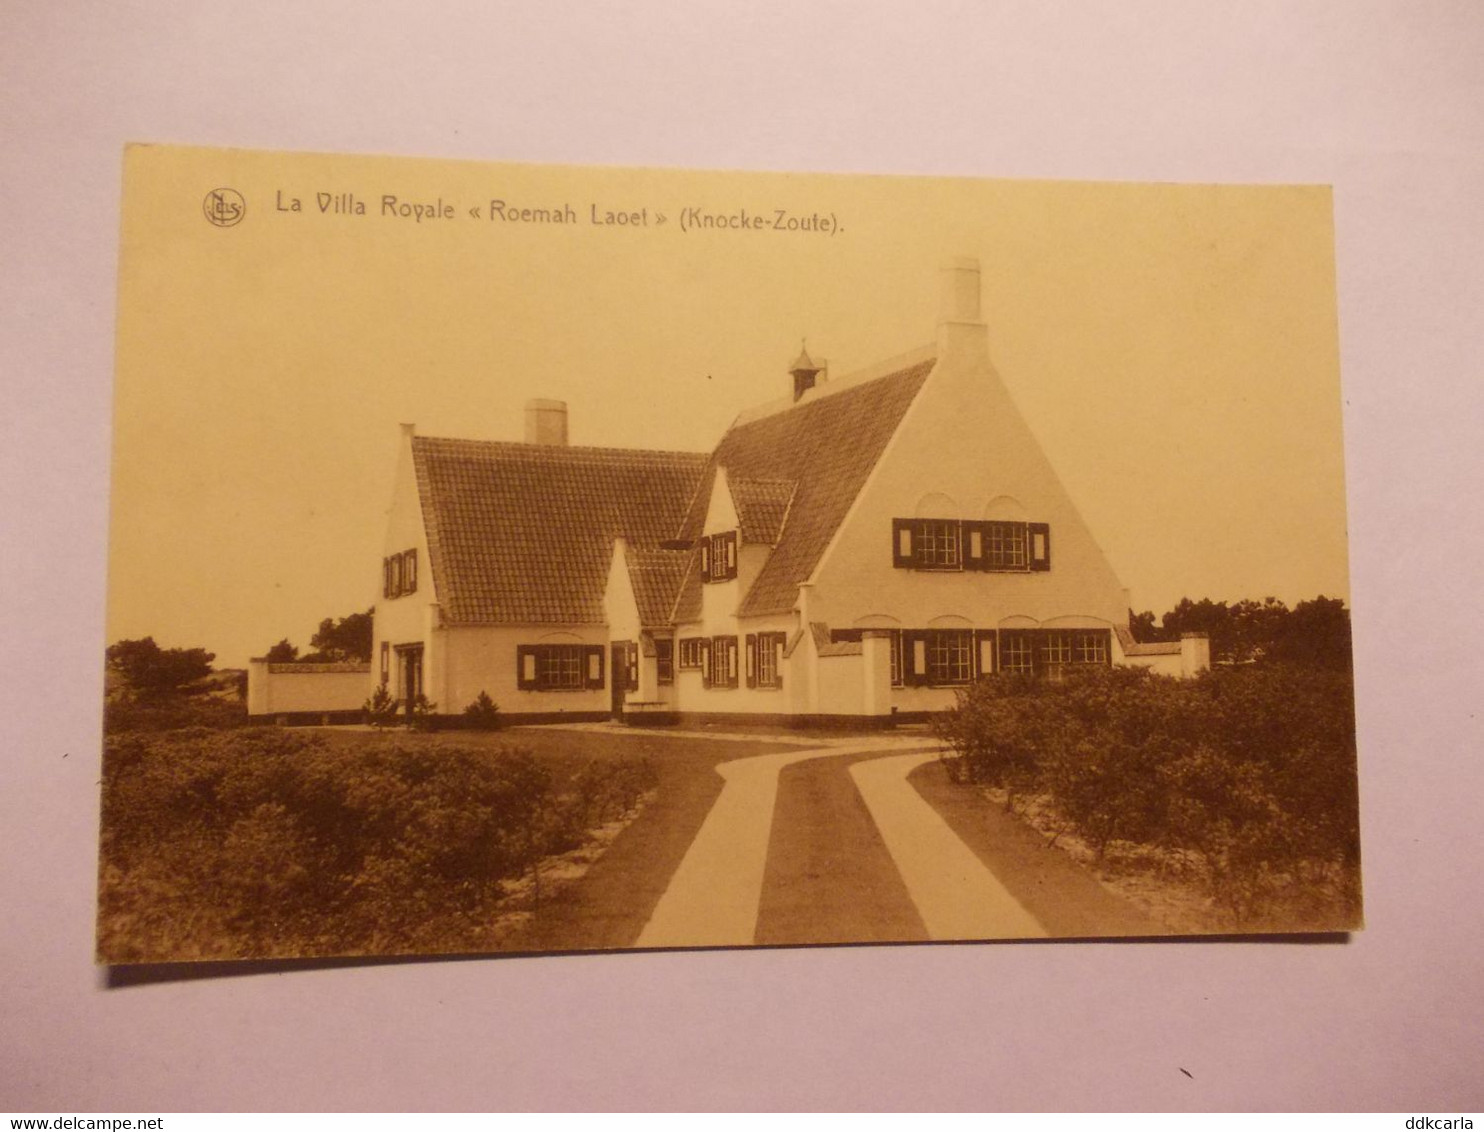 Knocke-Zoute - La Villa Royale "Roemah Laoet" - Knokke